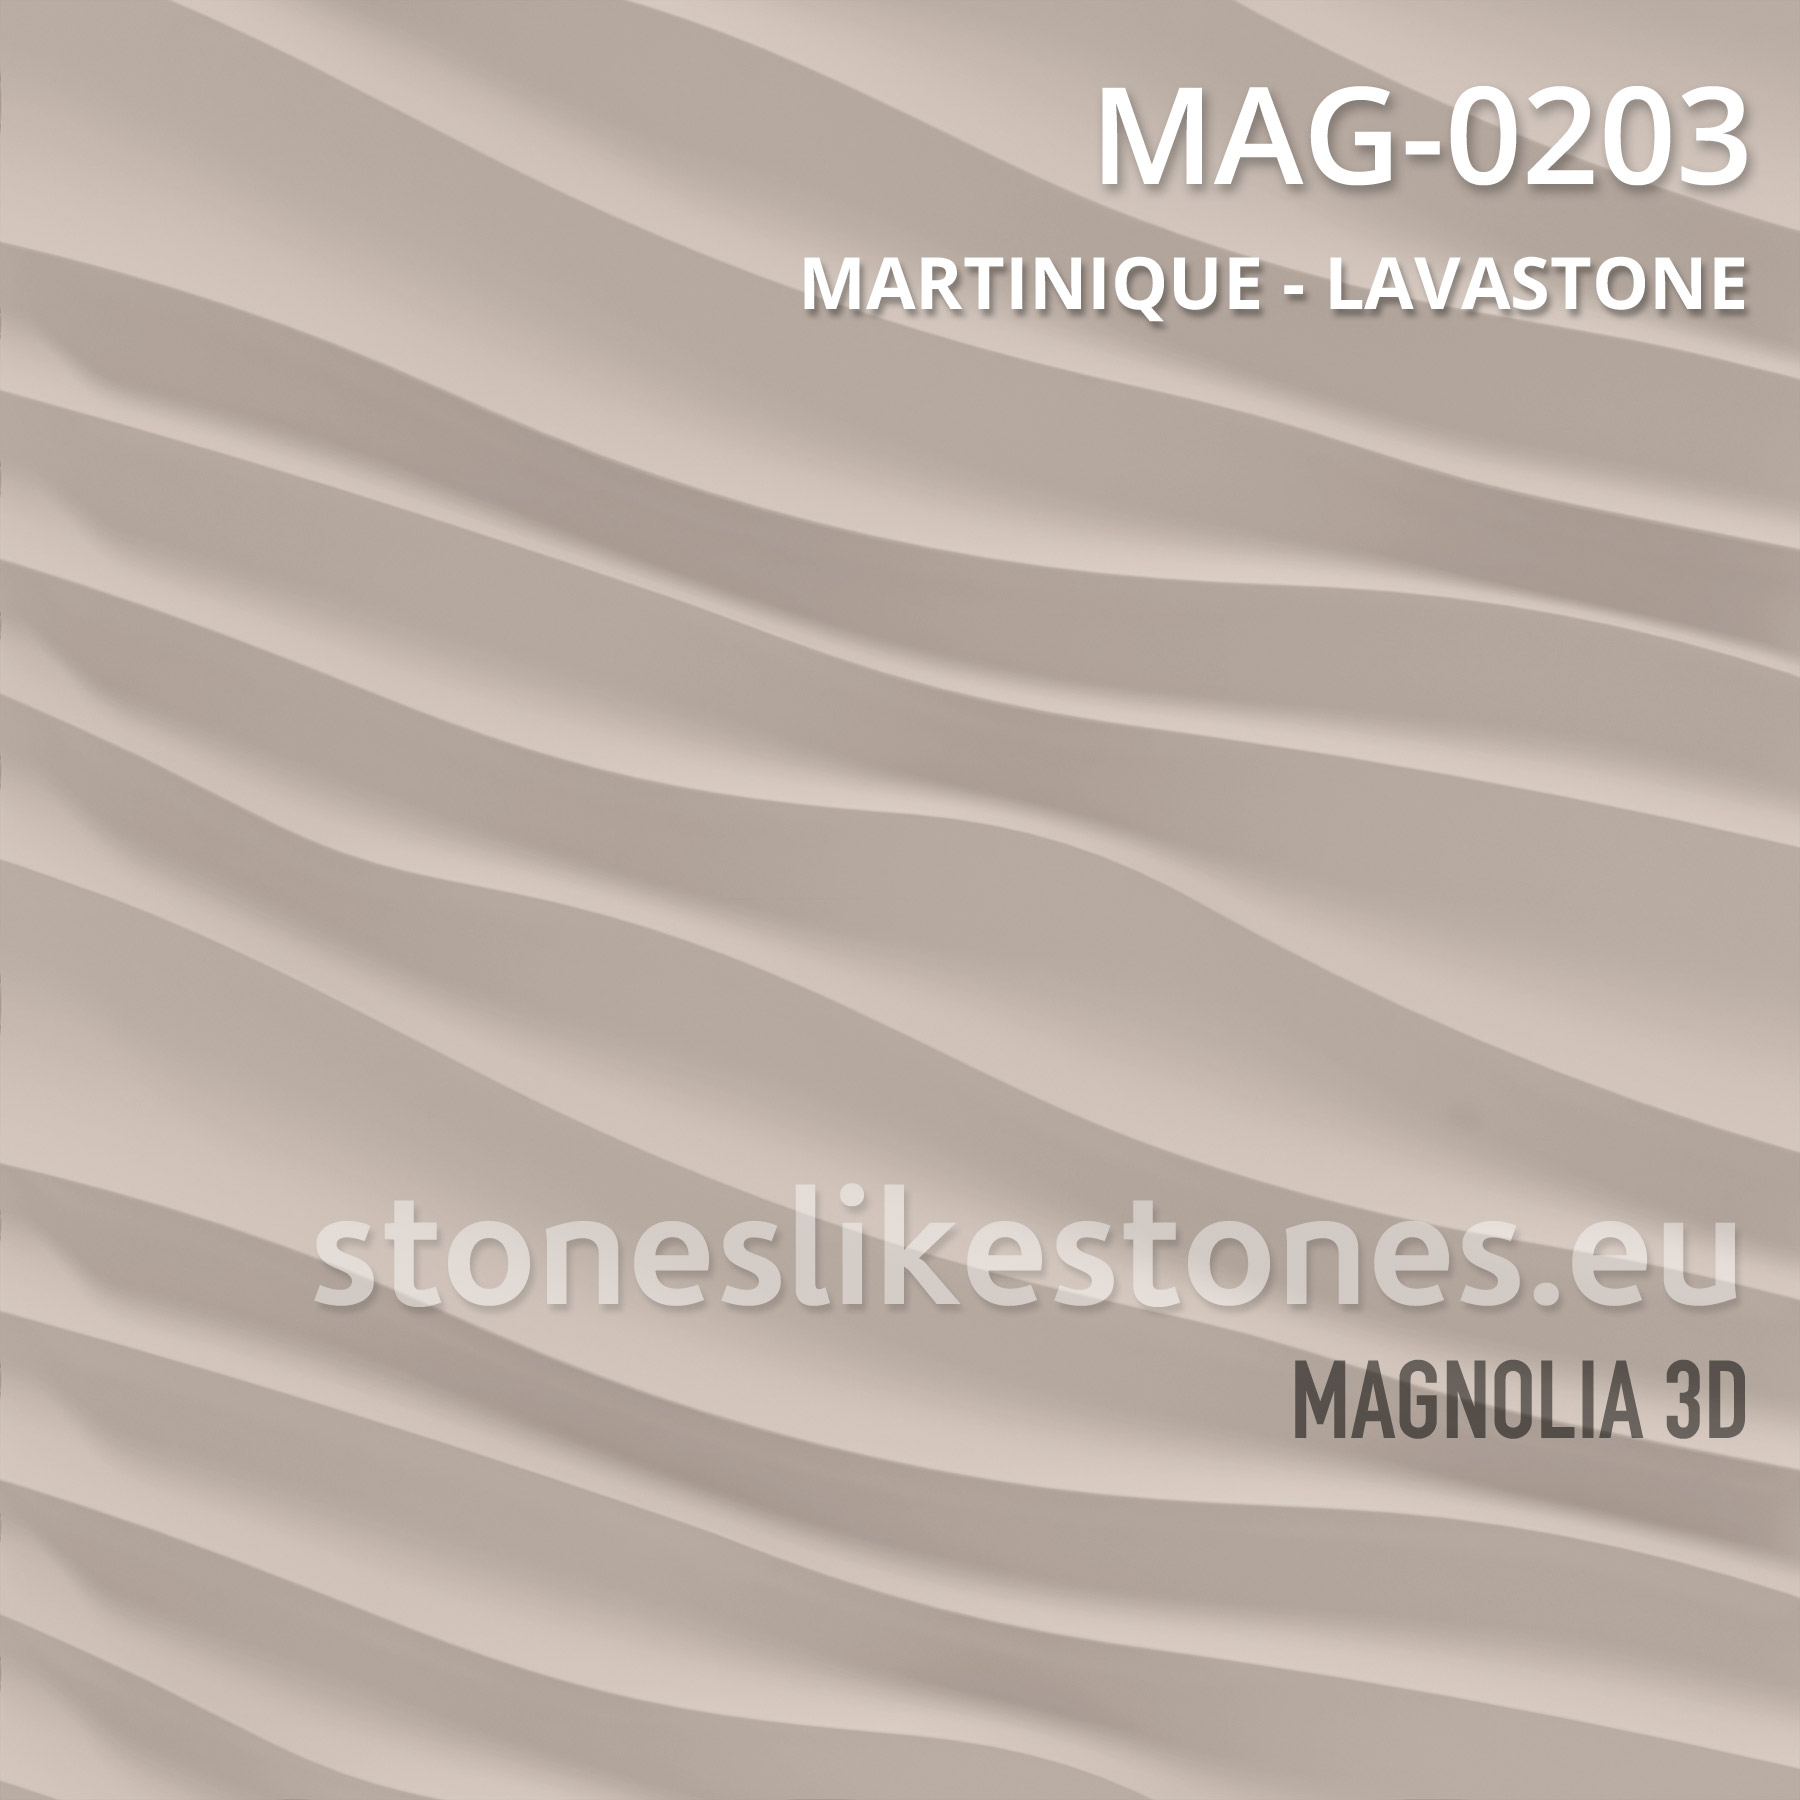 Magnolia 3D – MAG-0203 MARTINIQUE – LAVASTONE